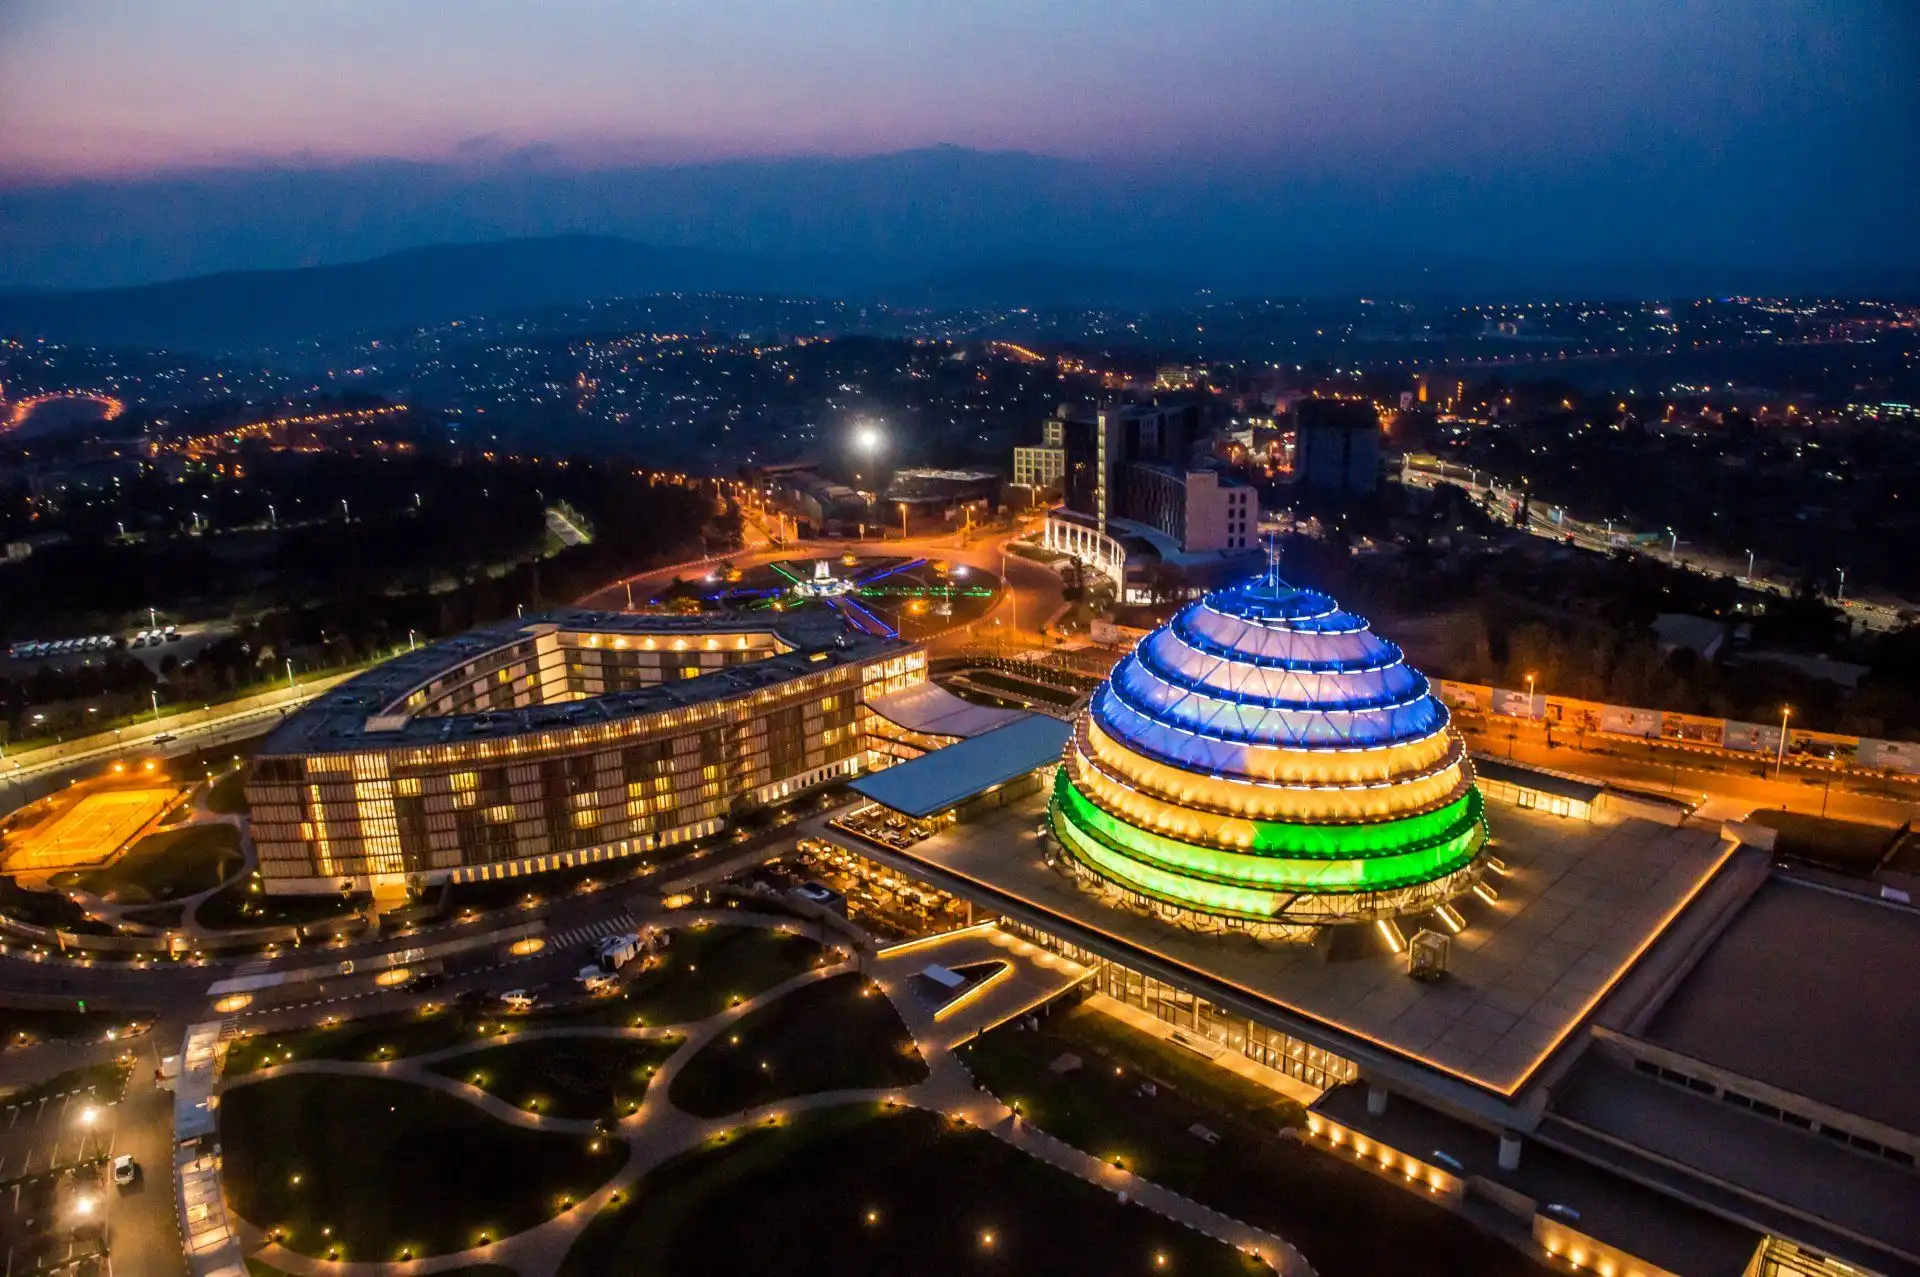 Kigali tourism